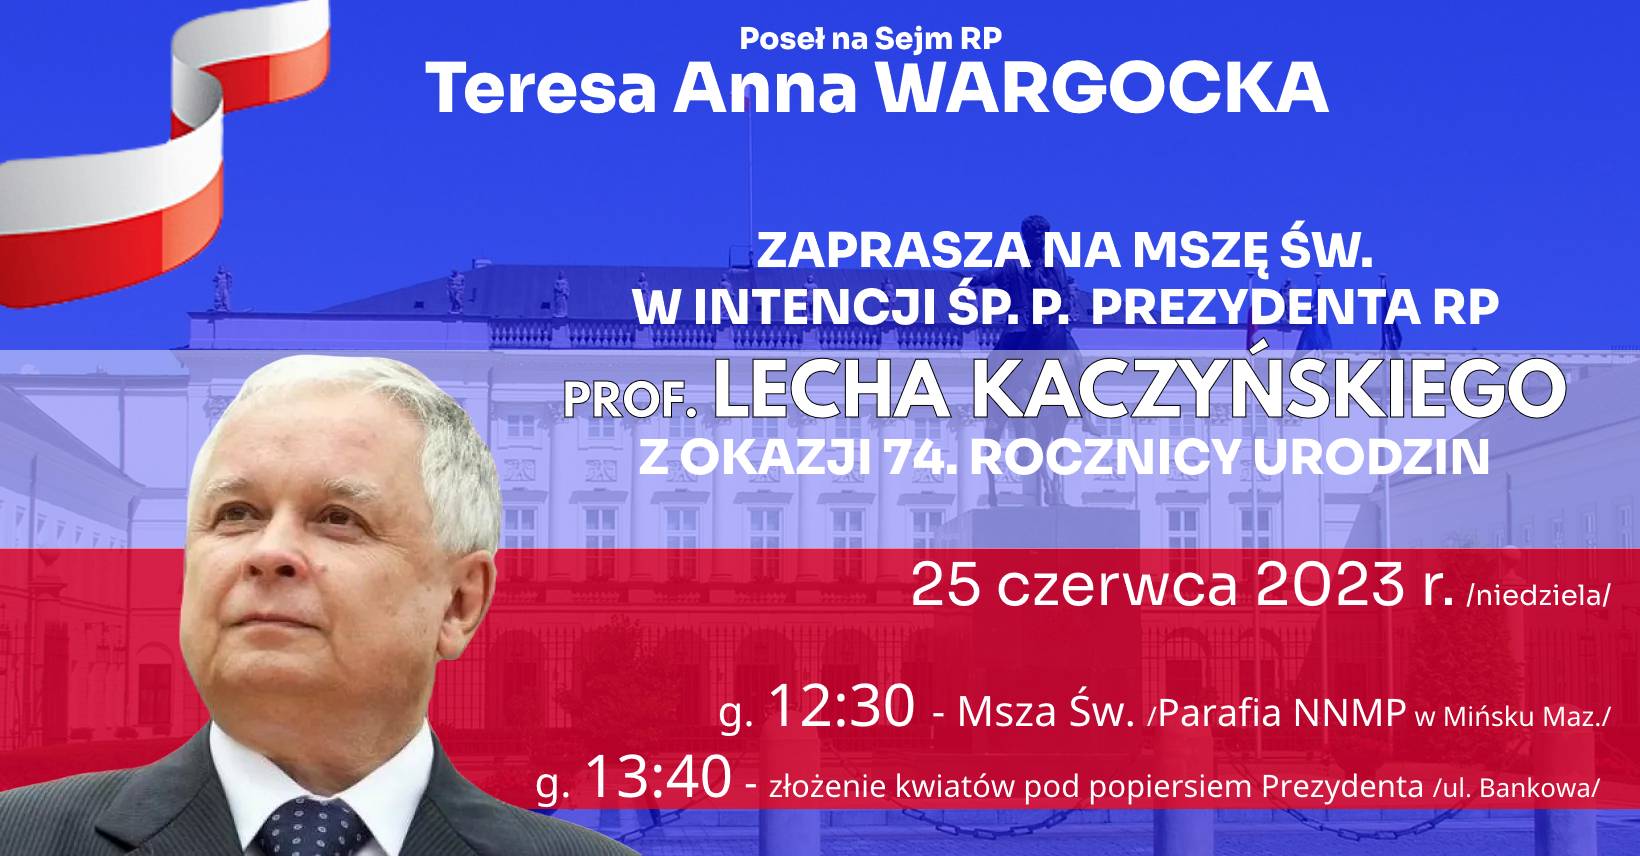 Msza Św. w intencji śp.p. Prezydenta RP prof. Lecha Kaczyńskiego